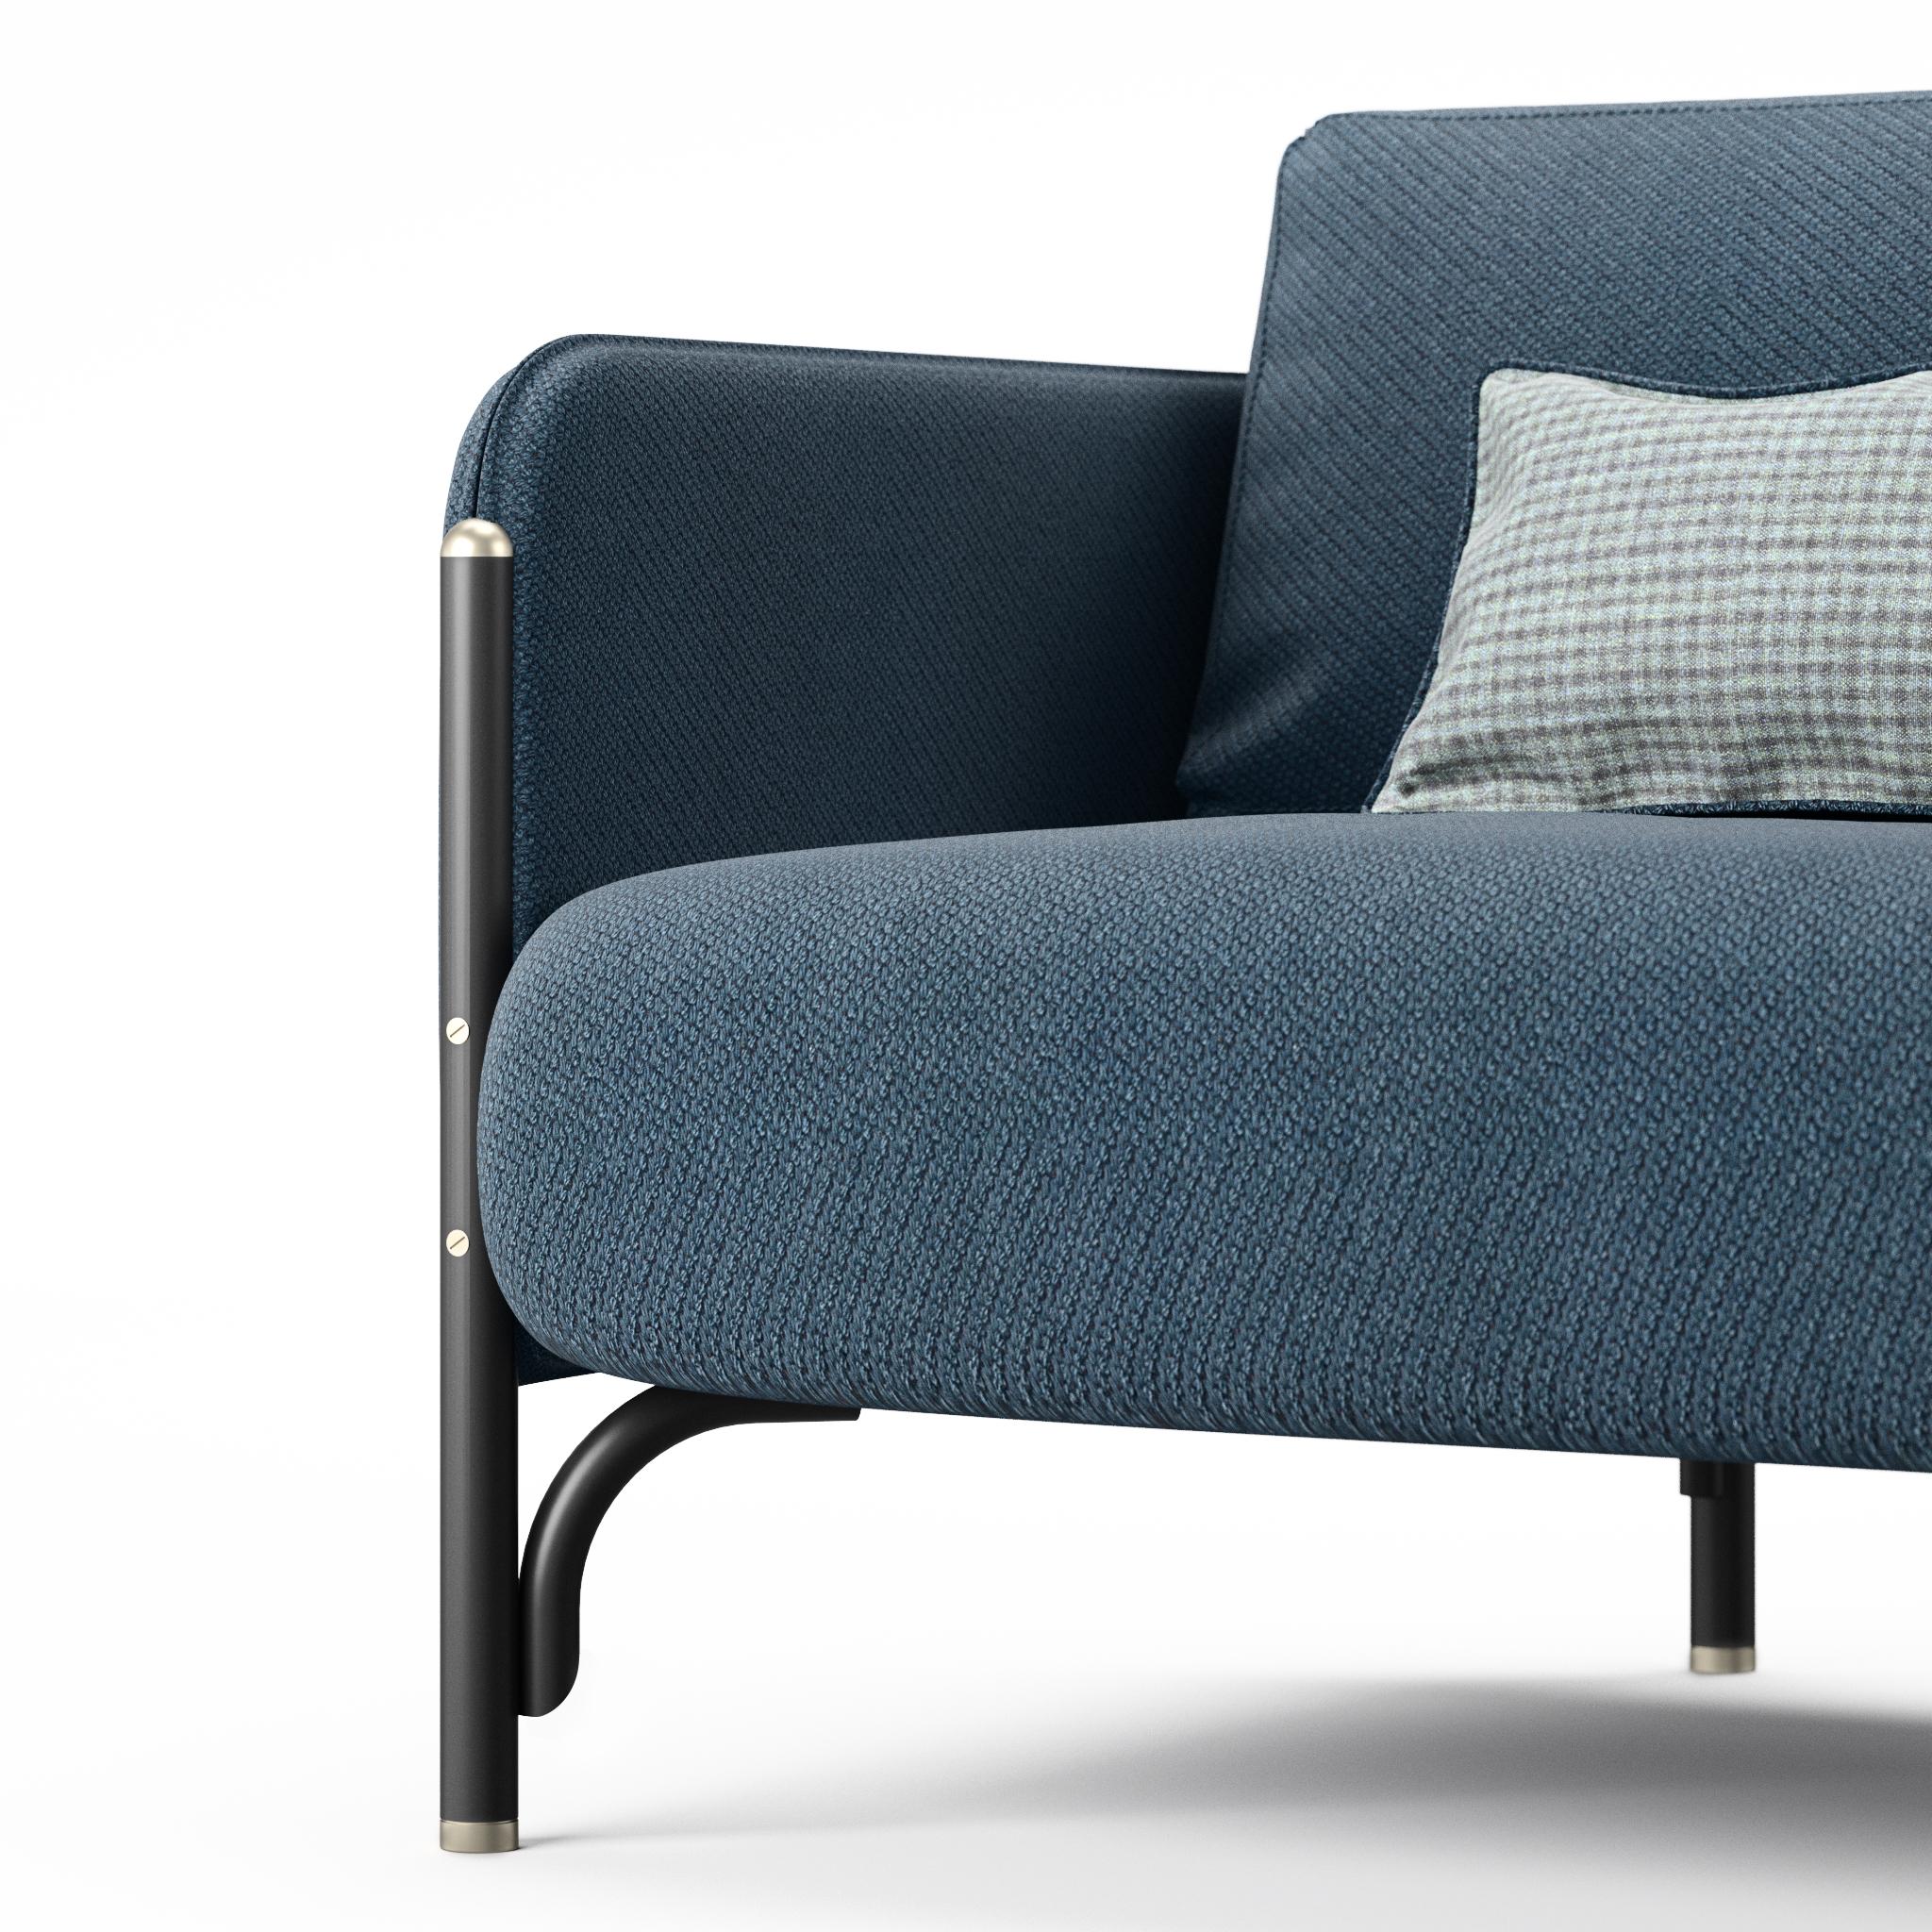 Dainelli Studio, das im Besitz des Kreativduos Leonardo und Marzia Dainelli steht, entwirft JANNIS, eine Polstermöbelkollektion, die sich hervorragend für den Auftragsgebrauch eignet.

Sofa und Loungesessel mit zwei- und dreisitzigen Sitzen, mit